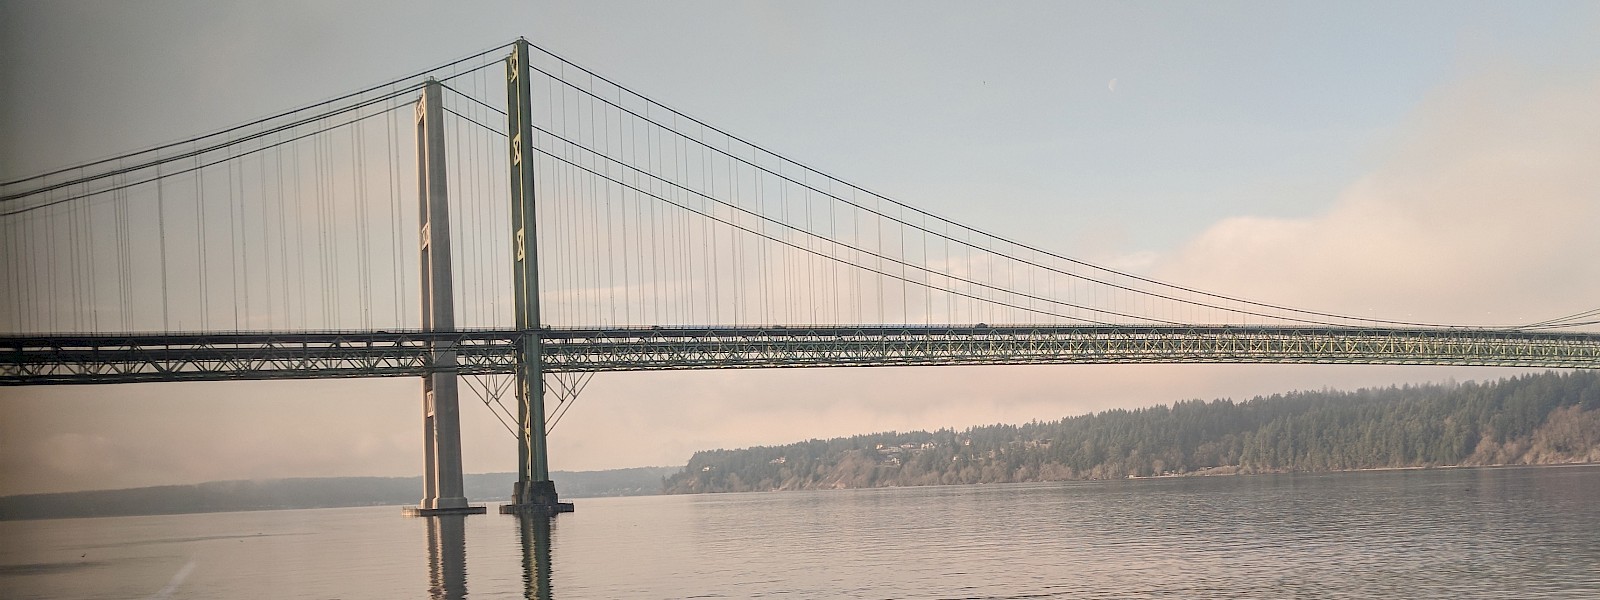 Tacoma Narrows Bridge, photo by C. Hamilton